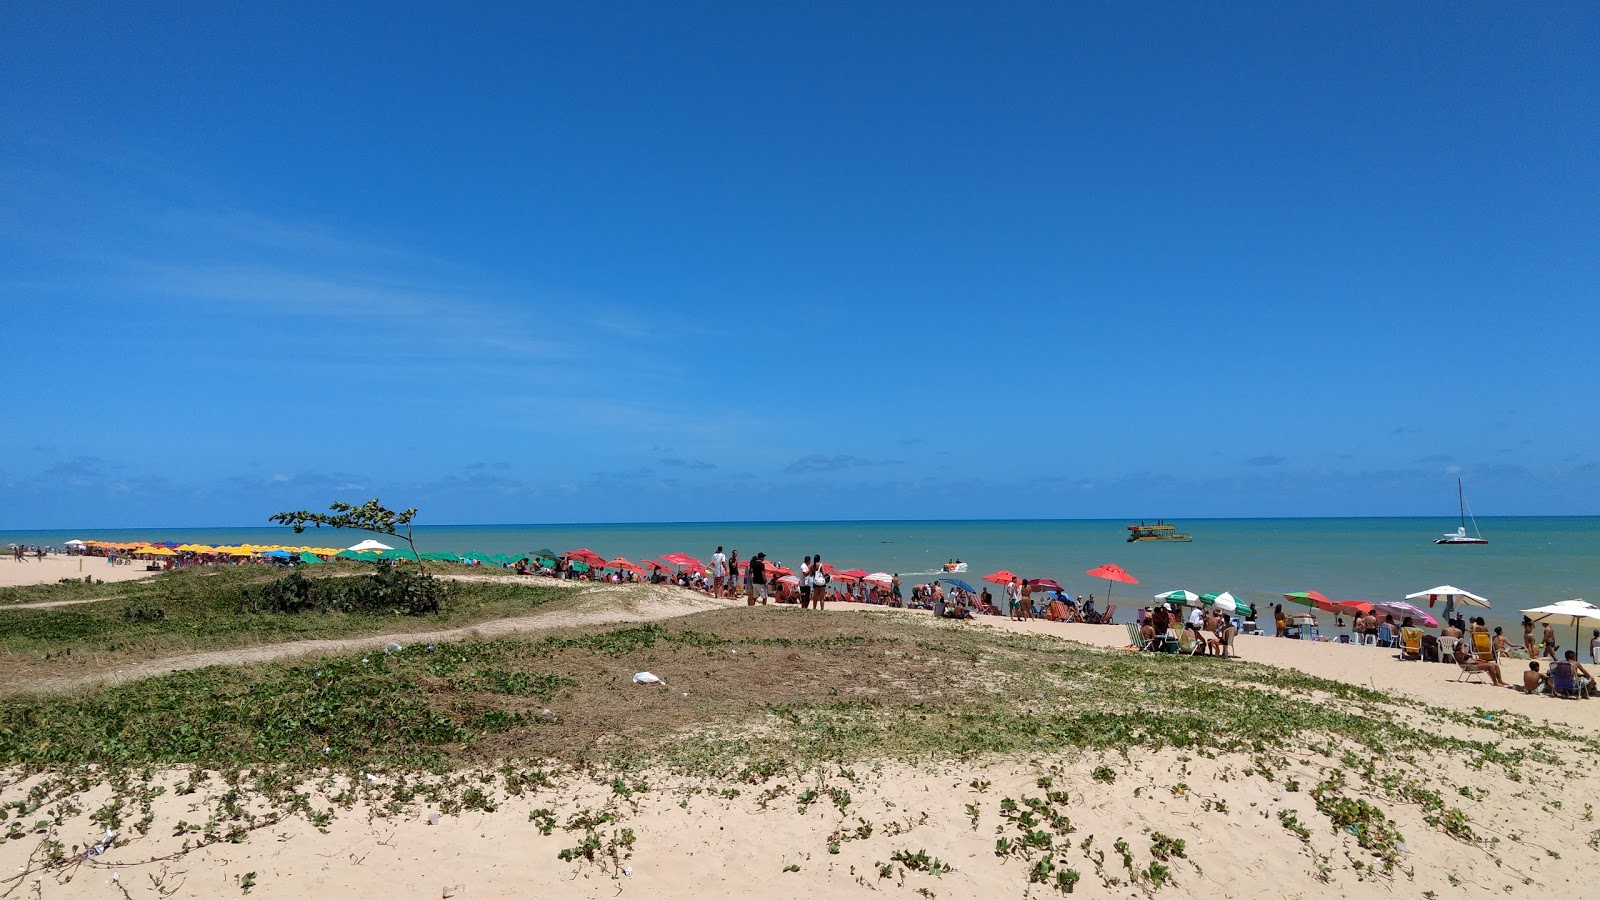 Praia de Manaira的照片 具有非常干净级别的清洁度